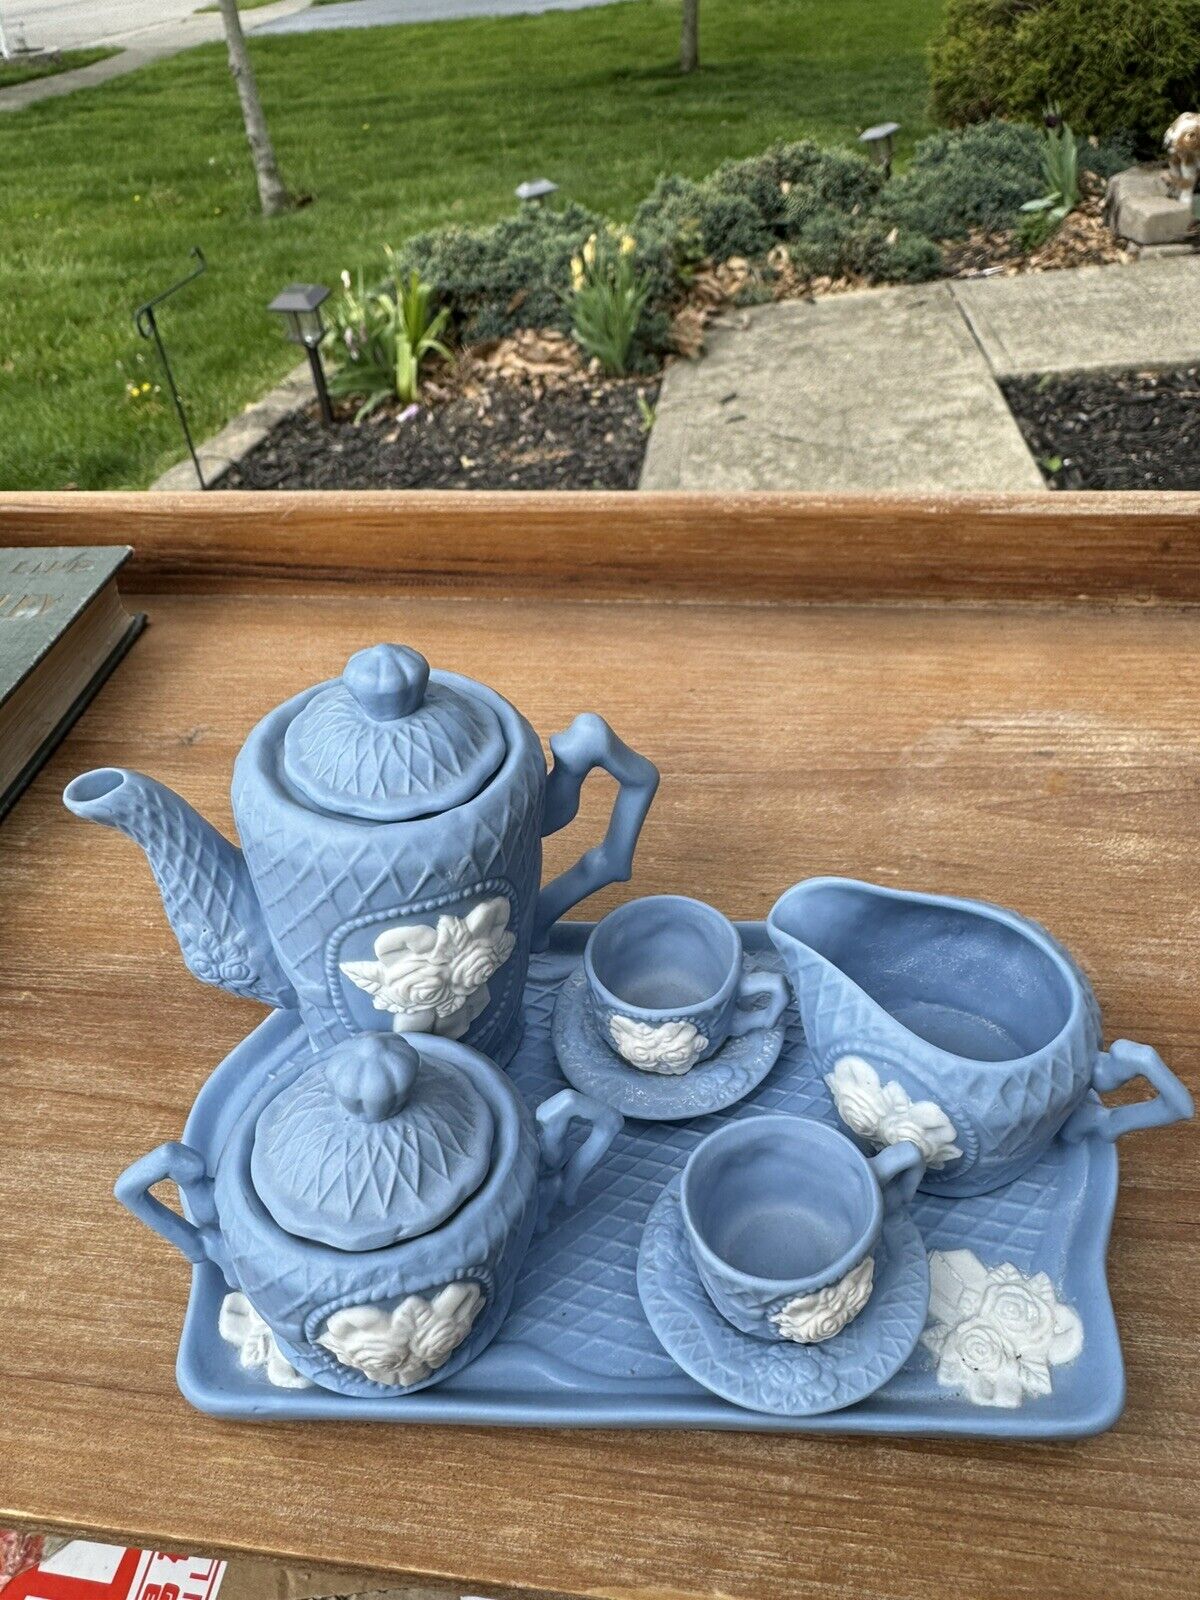 Antique Miniature Ceramic Tea Set With Roses